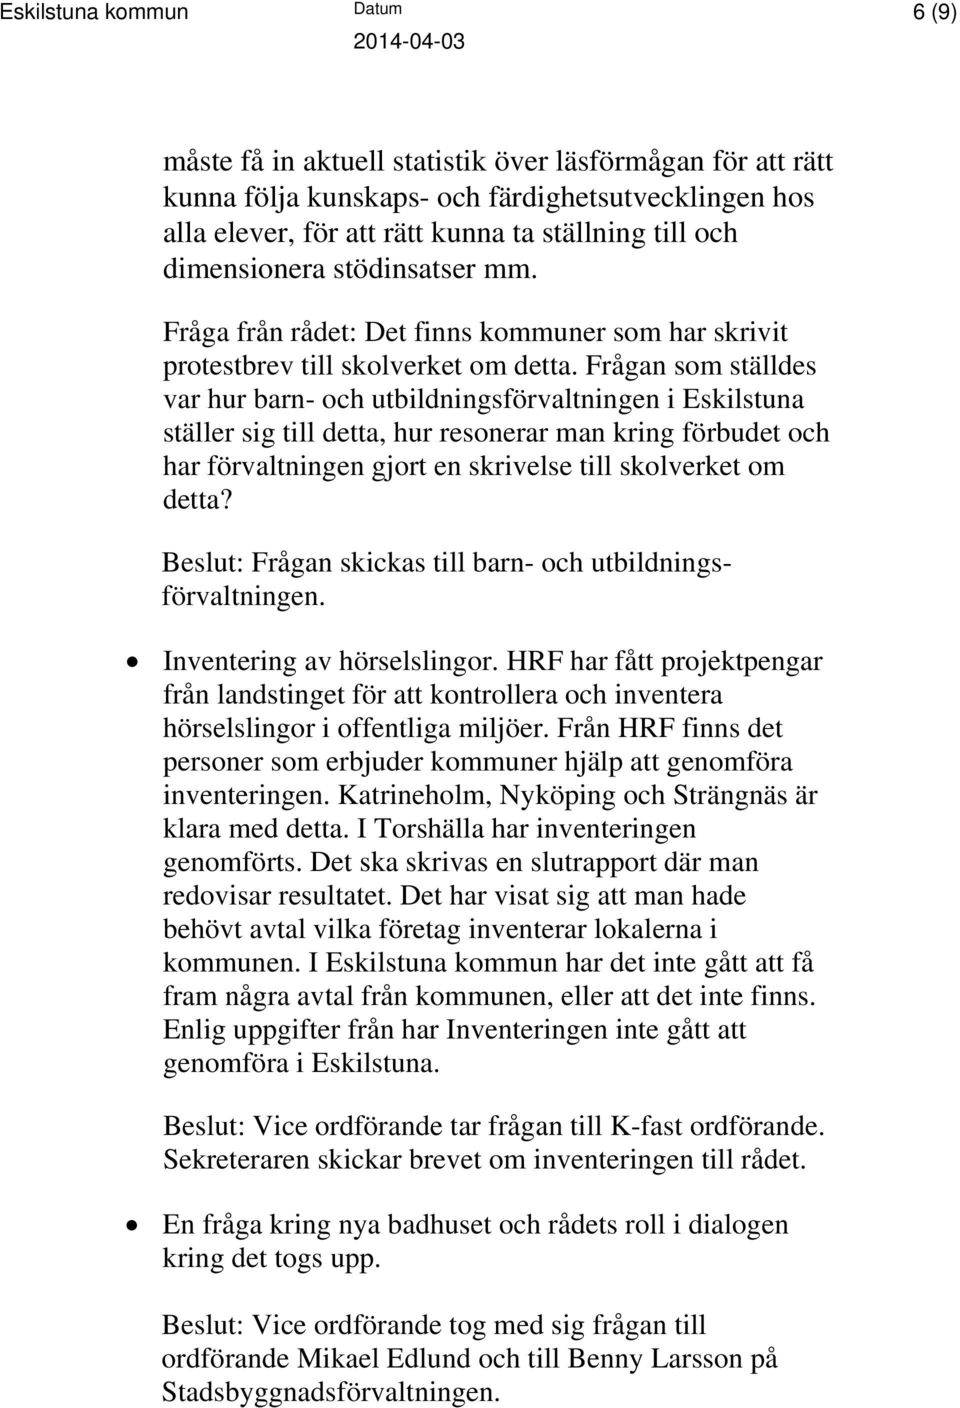 Frågan som ställdes var hur barn- och utbildningsförvaltningen i Eskilstuna ställer sig till detta, hur resonerar man kring förbudet och har förvaltningen gjort en skrivelse till skolverket om detta?